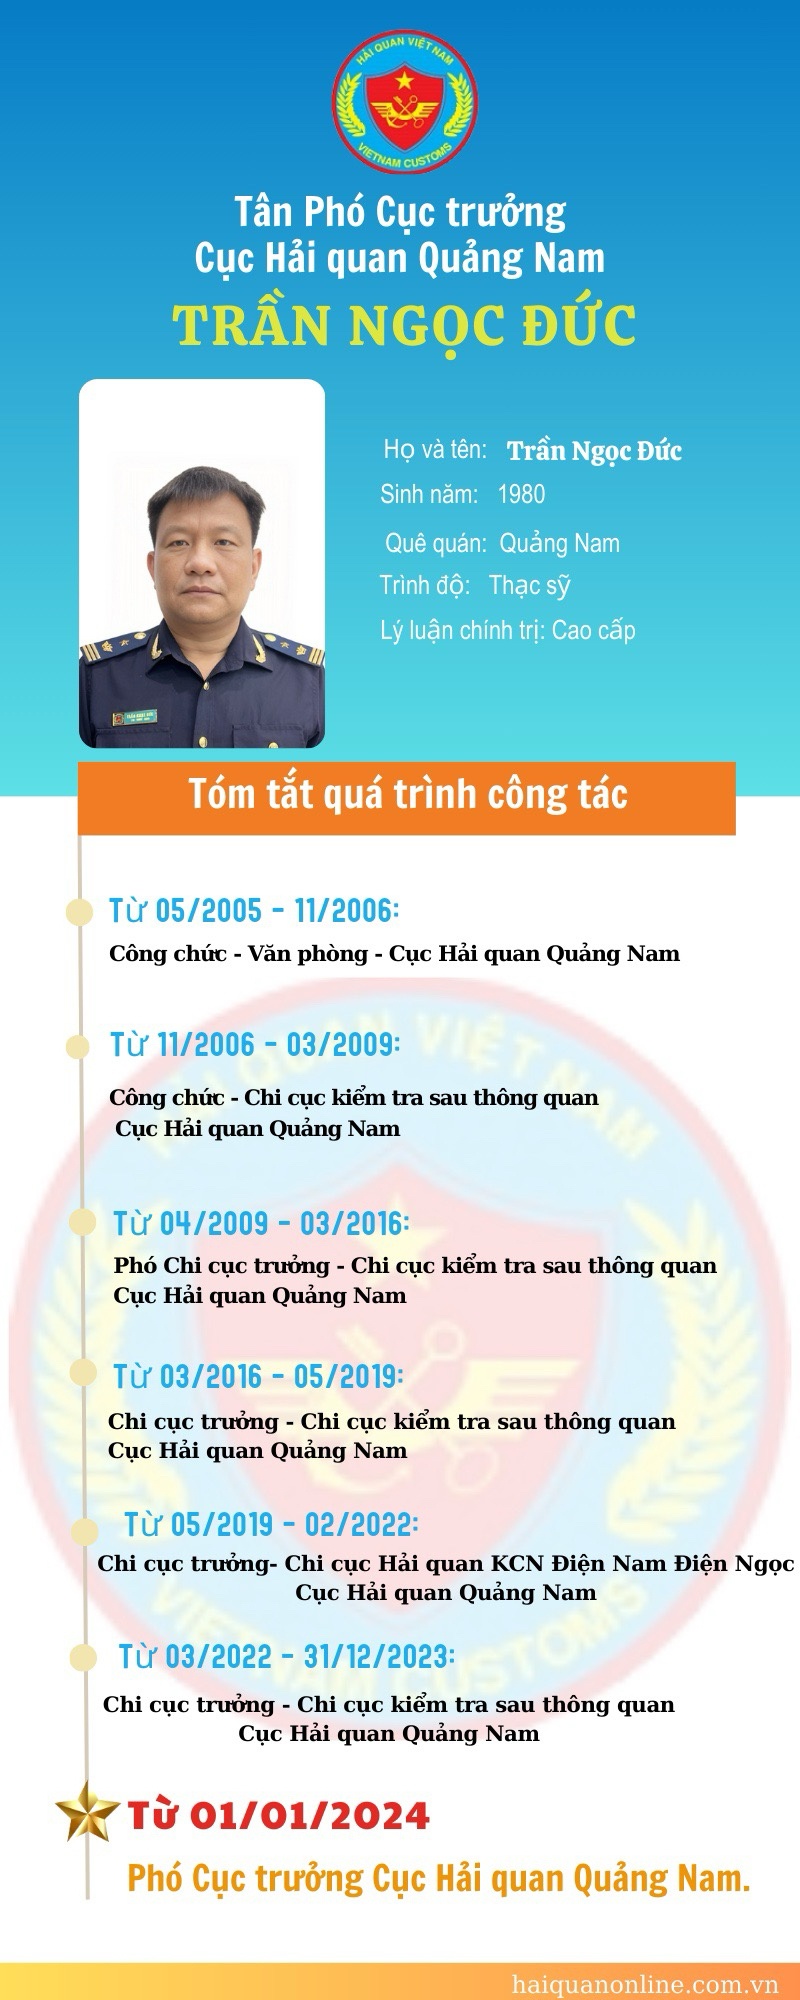 Infographic: Quá trình công tác của tân Phó Cục trưởng Cục Hải quan Quảng Nam Trần Ngọc Đức